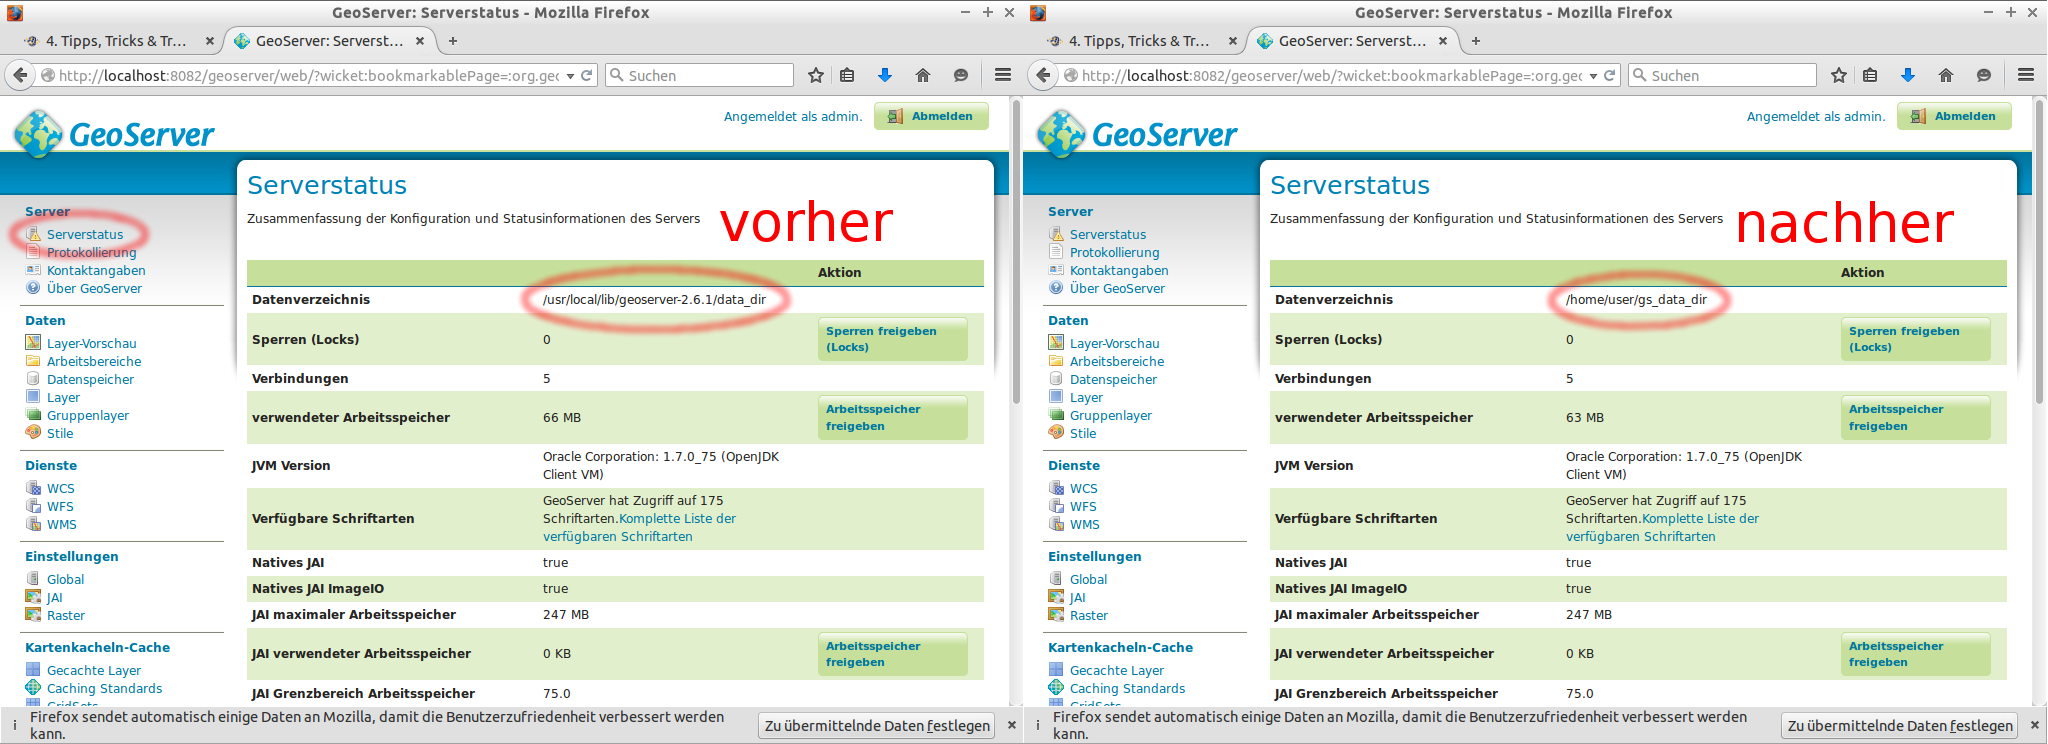 GeoServer-Datenverzeichnis Das Datenverzeichnis liegt standardmäßig "im" GeoServer.